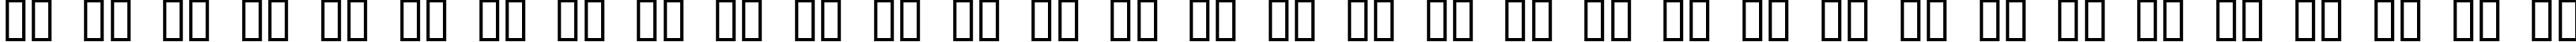 Пример написания русского алфавита шрифтом dUBBEL